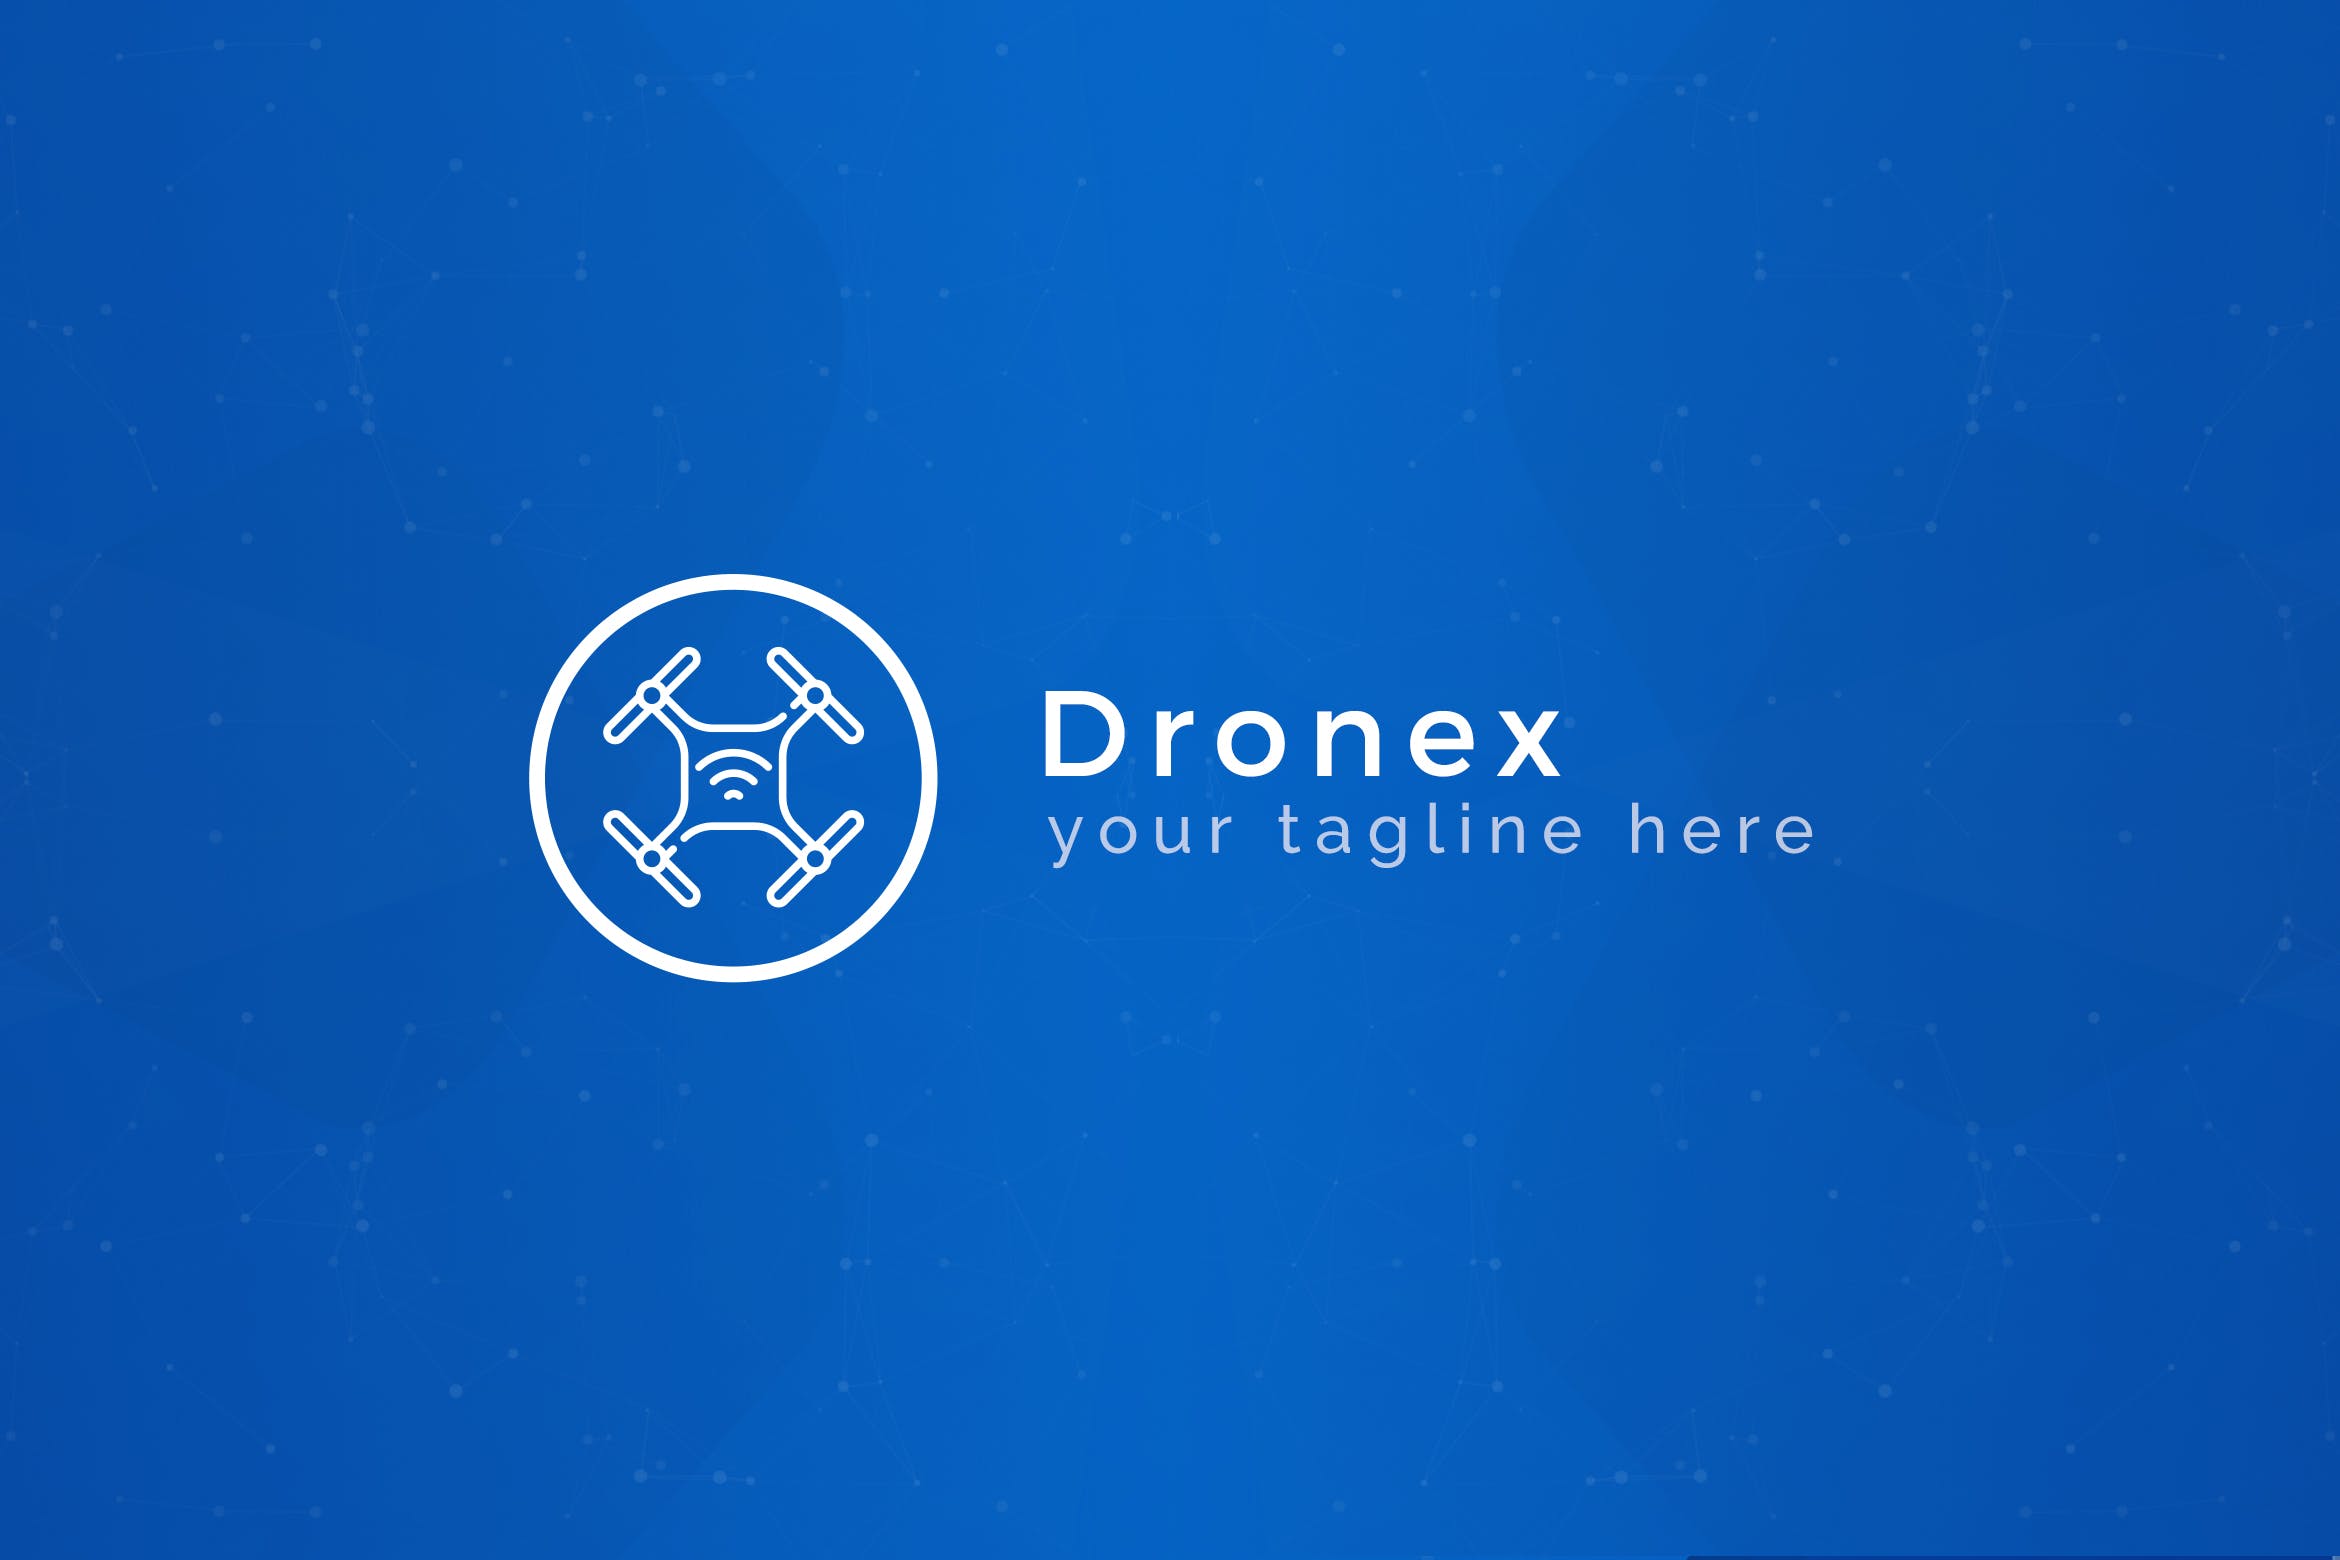 无人机品牌Logo设计非凡图库精选模板 Dronex – Premium Drone Logo Template插图